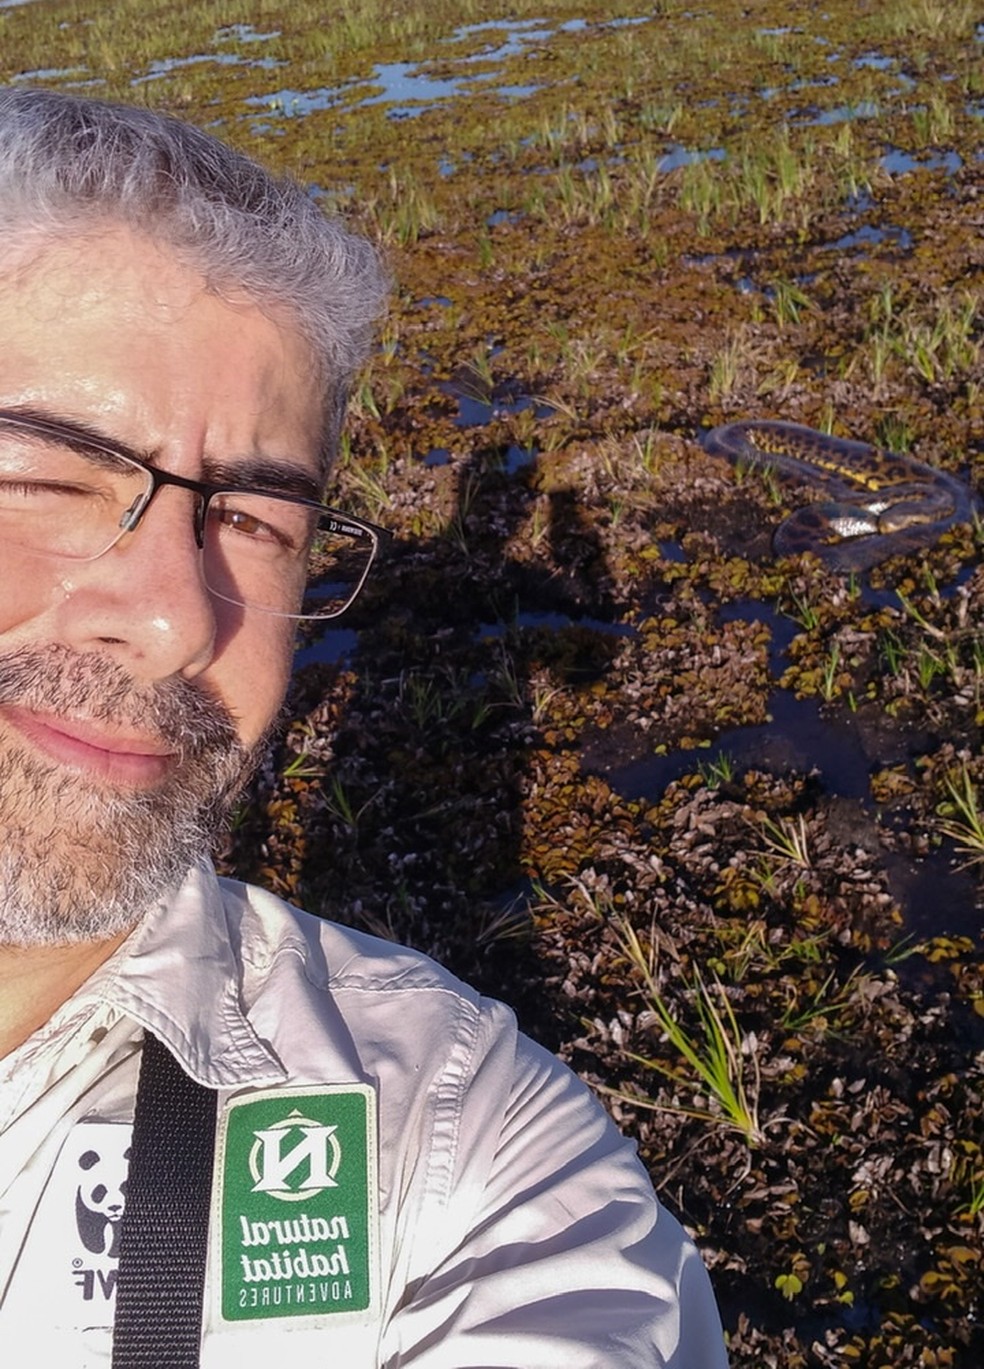 Biológo fez "selfie" com a serpente — Foto: Reprodução/ Helder Brandão 